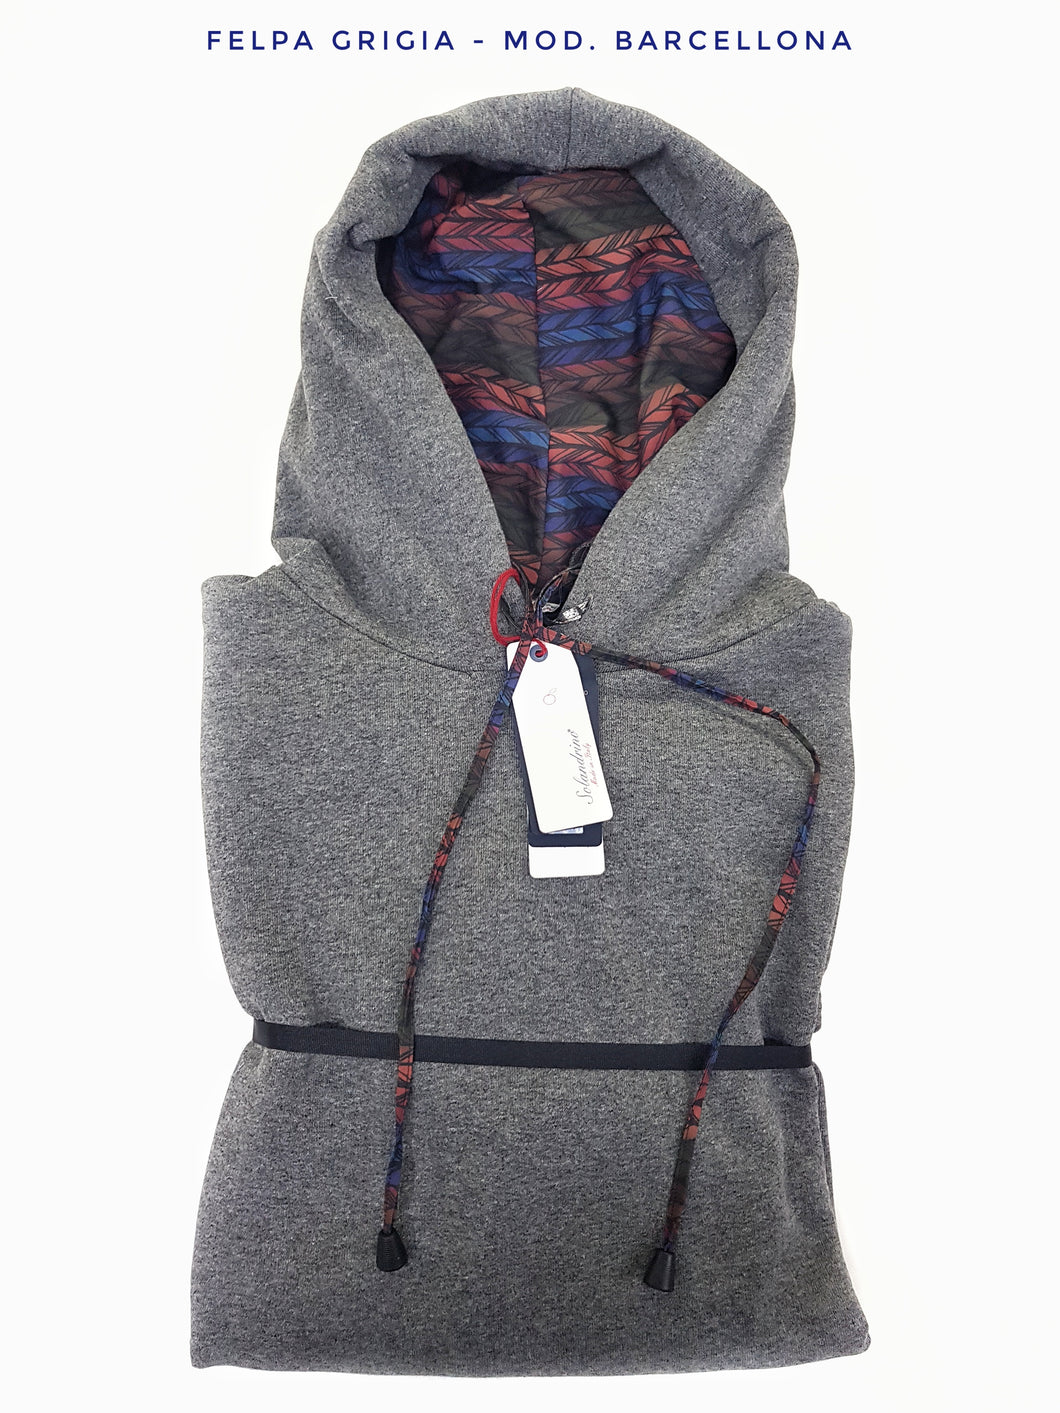 Felpa Grigia con Cappuccio Design Barcellona made in Italy Fantasia  100% cotone -  UNISEX Sweatshirt grey hoodie